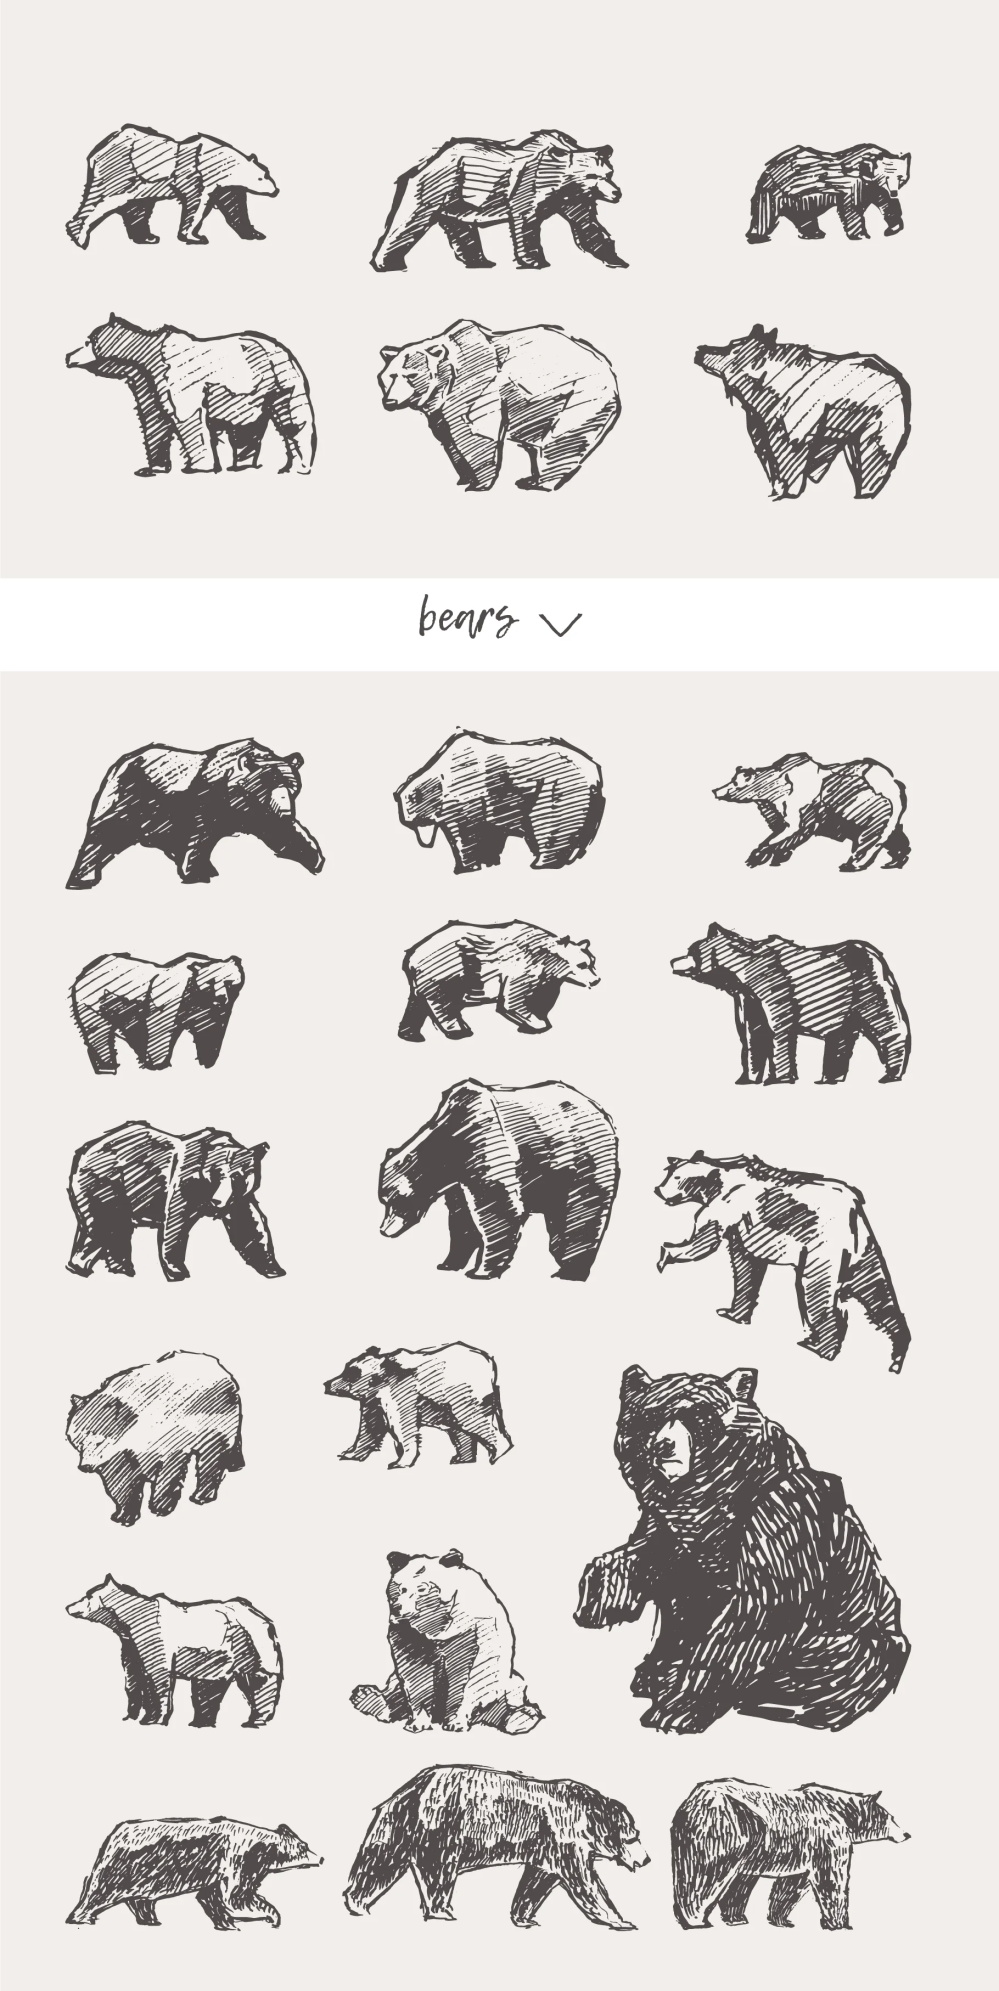 21种森林动物海洋生物插图矢量素材 图片素材 第2张